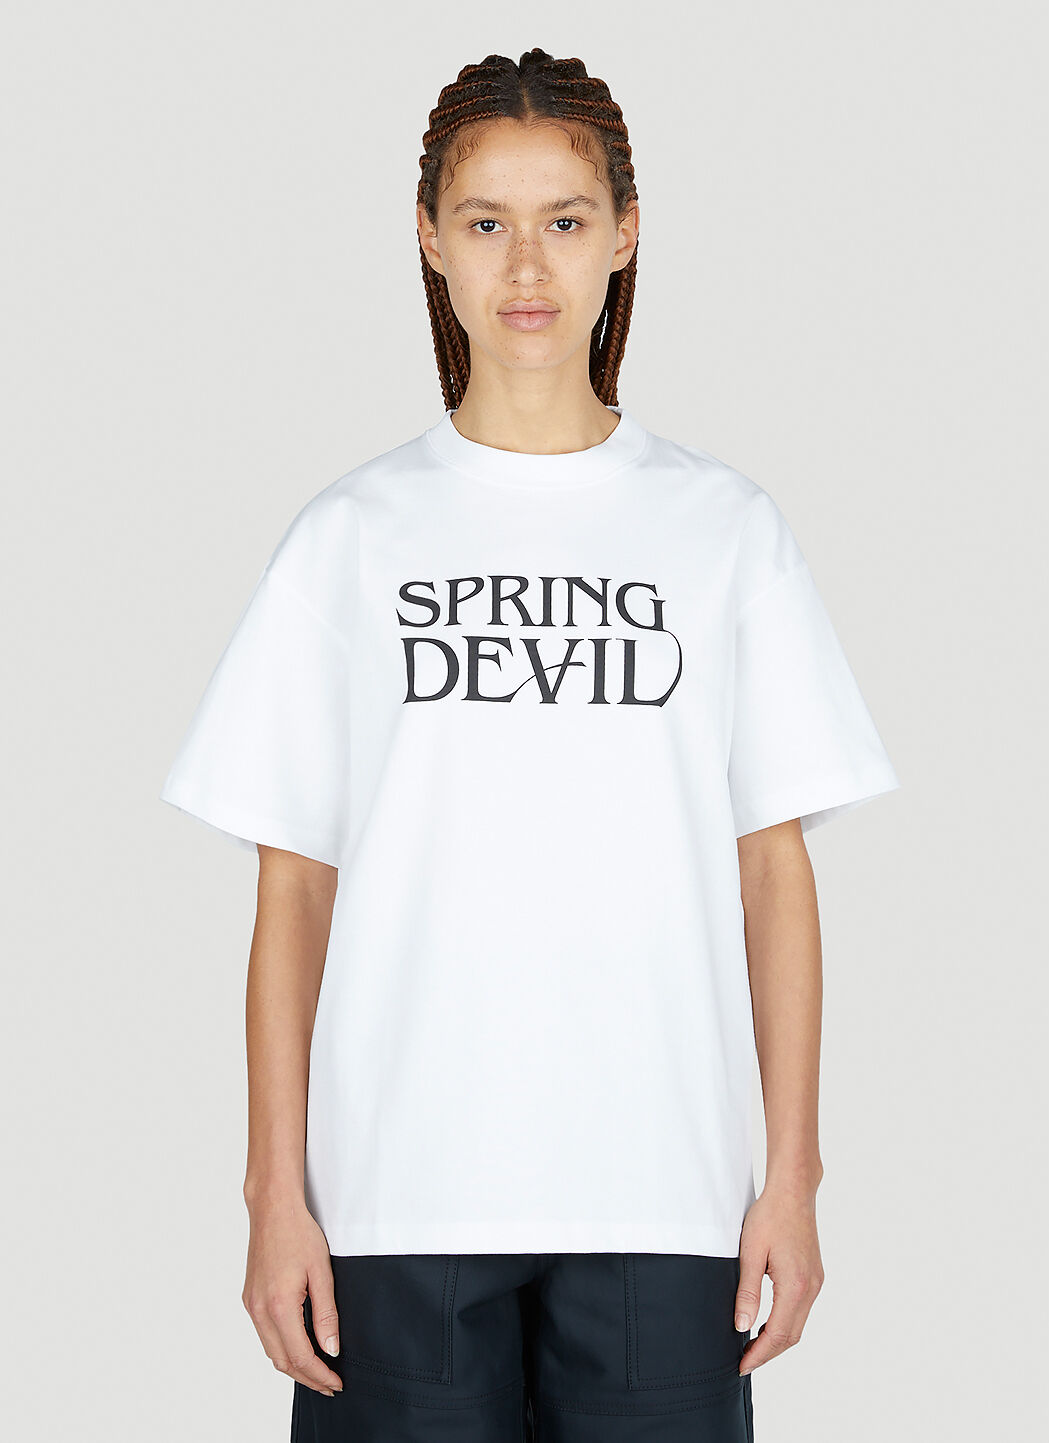 Soulland Spring Devil T 恤 黑 sld0249008